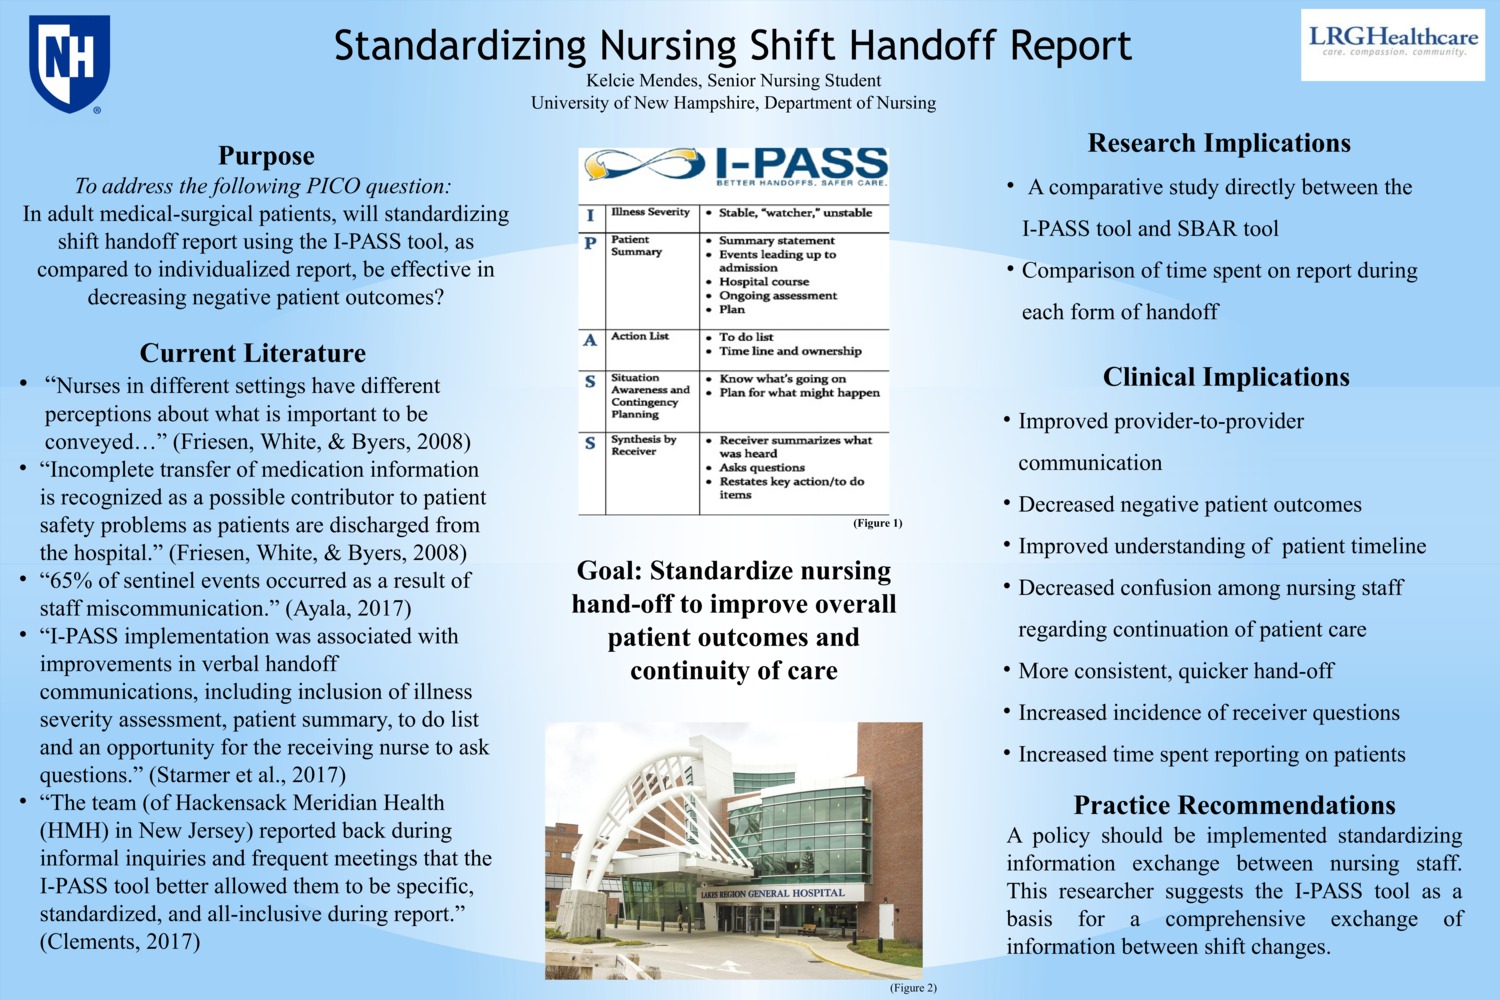 Standardizing Nursing Handoff by kelciemendes